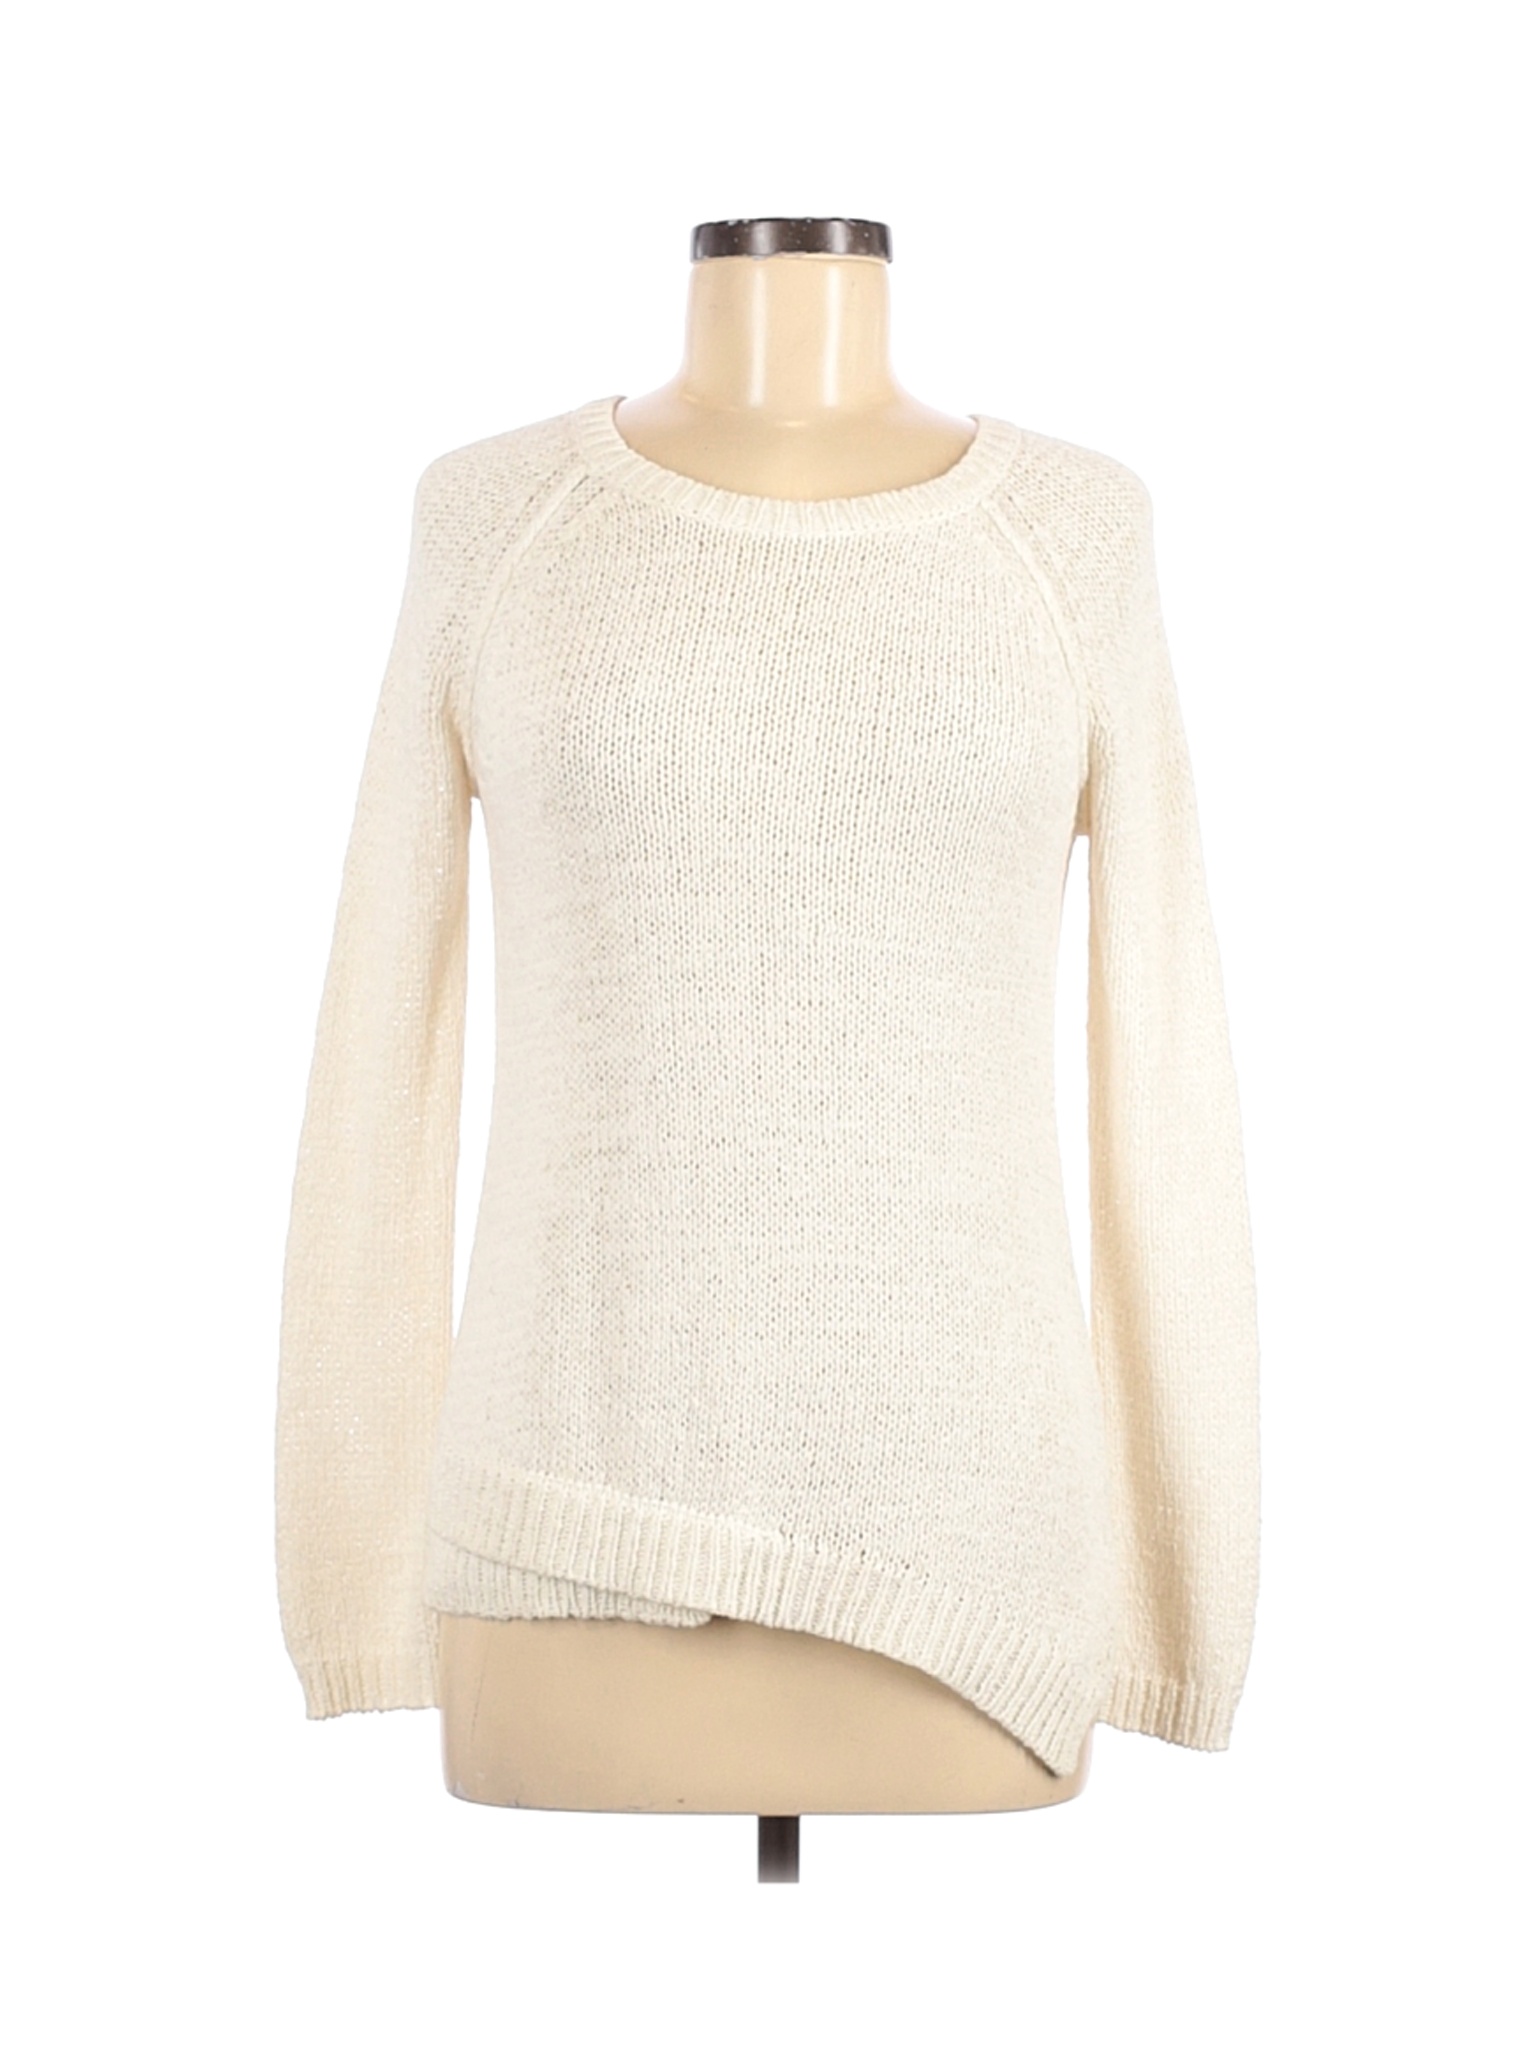 Brochu Walker Women Ivory Pullover Sweater P | eBay